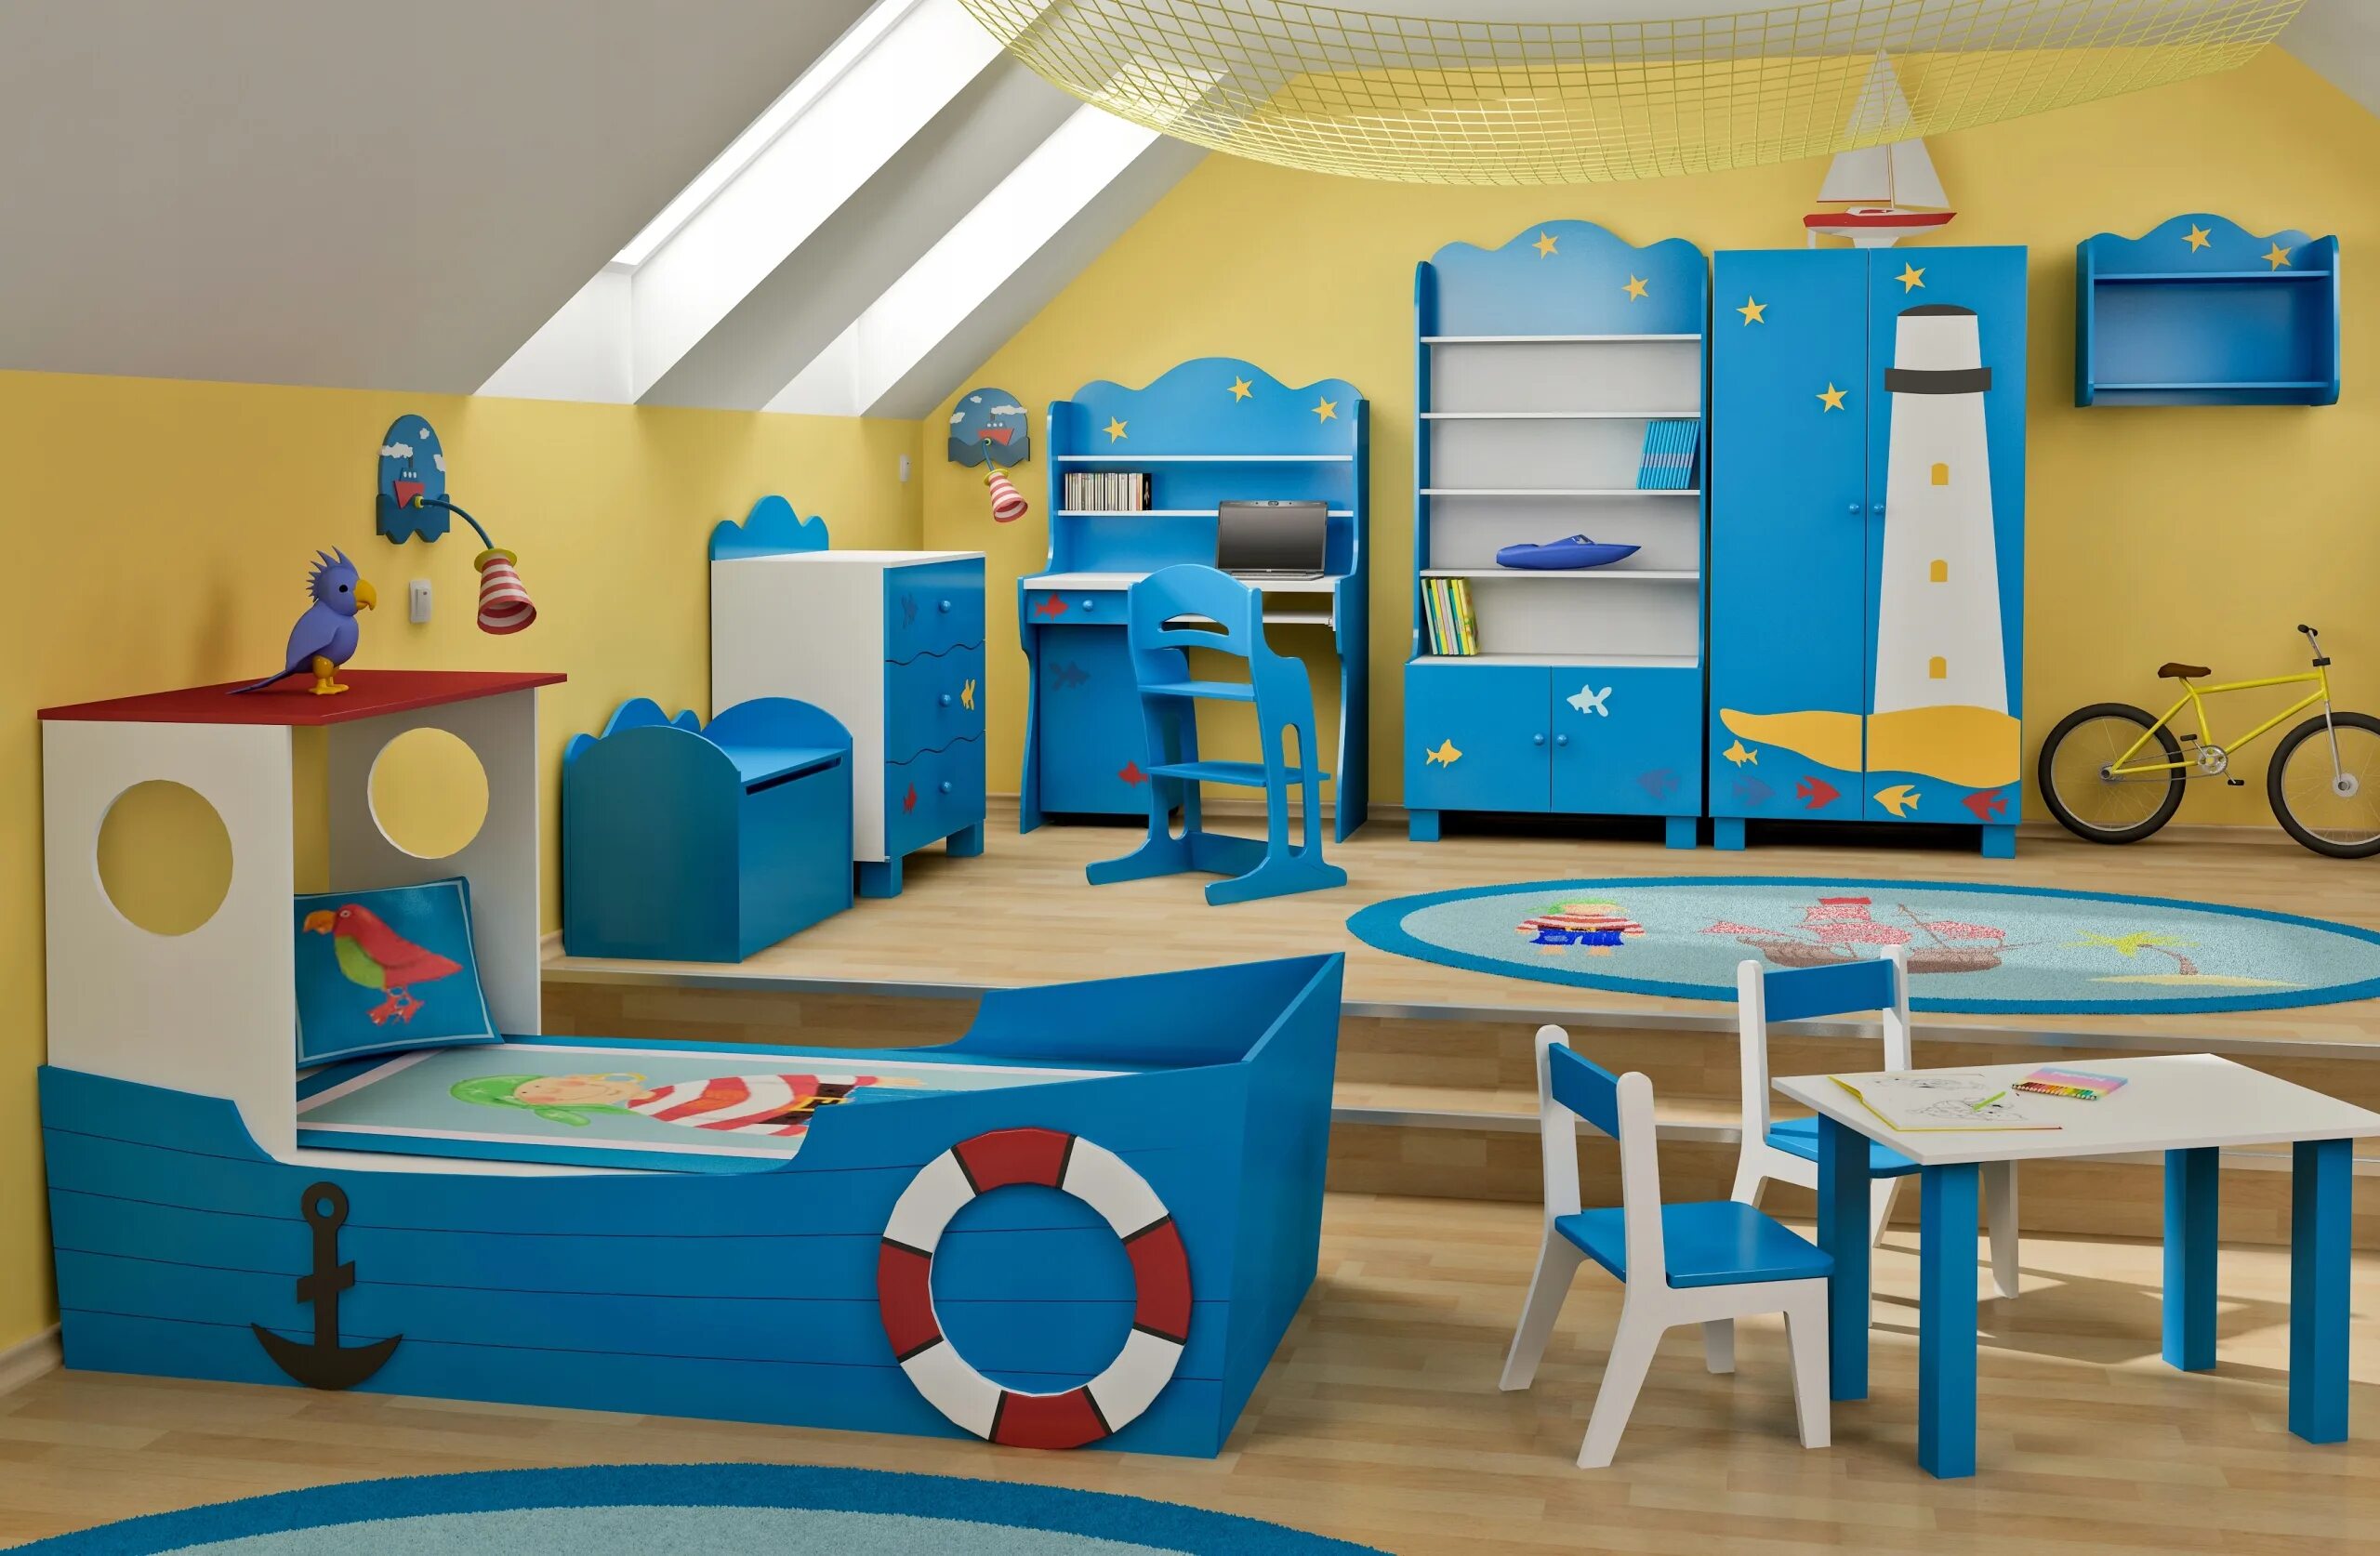 Производство детских садов. Детская комната. Мебель для детского сада. Дизайнерская мебель для детского сада. Мебель в игровую комнату для детей.